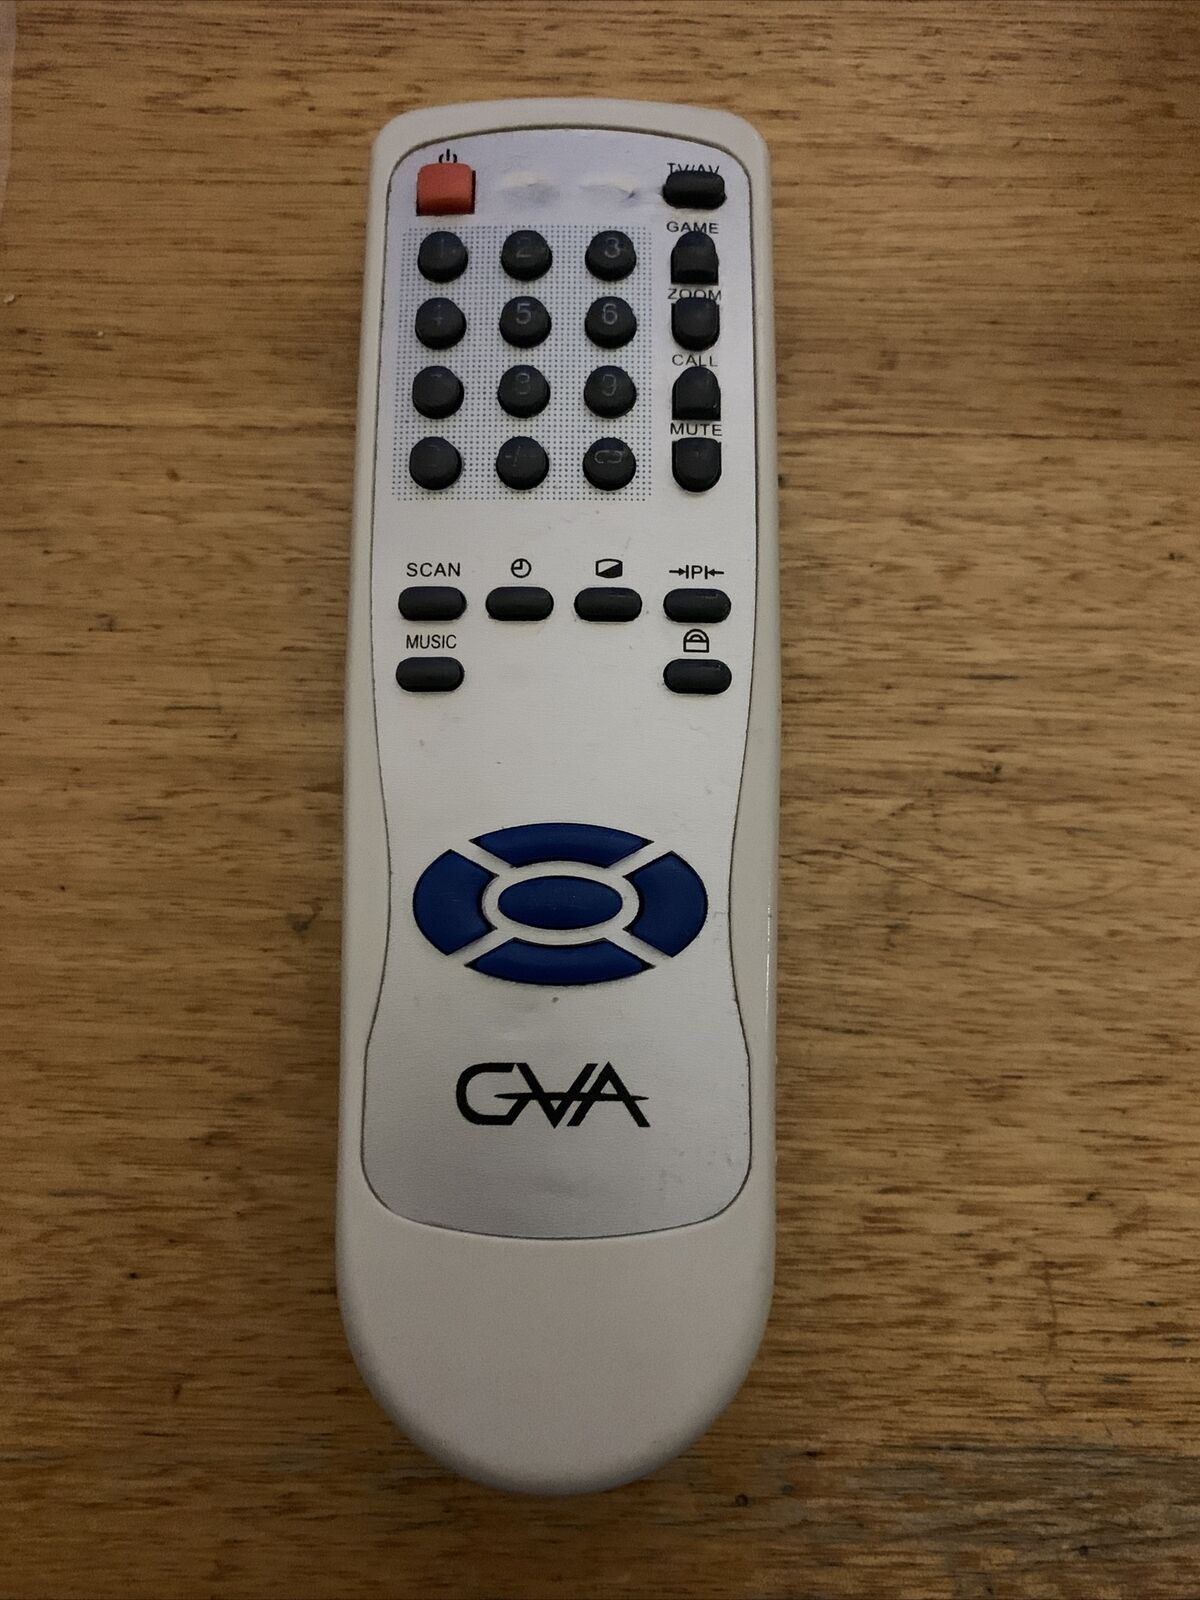 GVA TV Remote Control